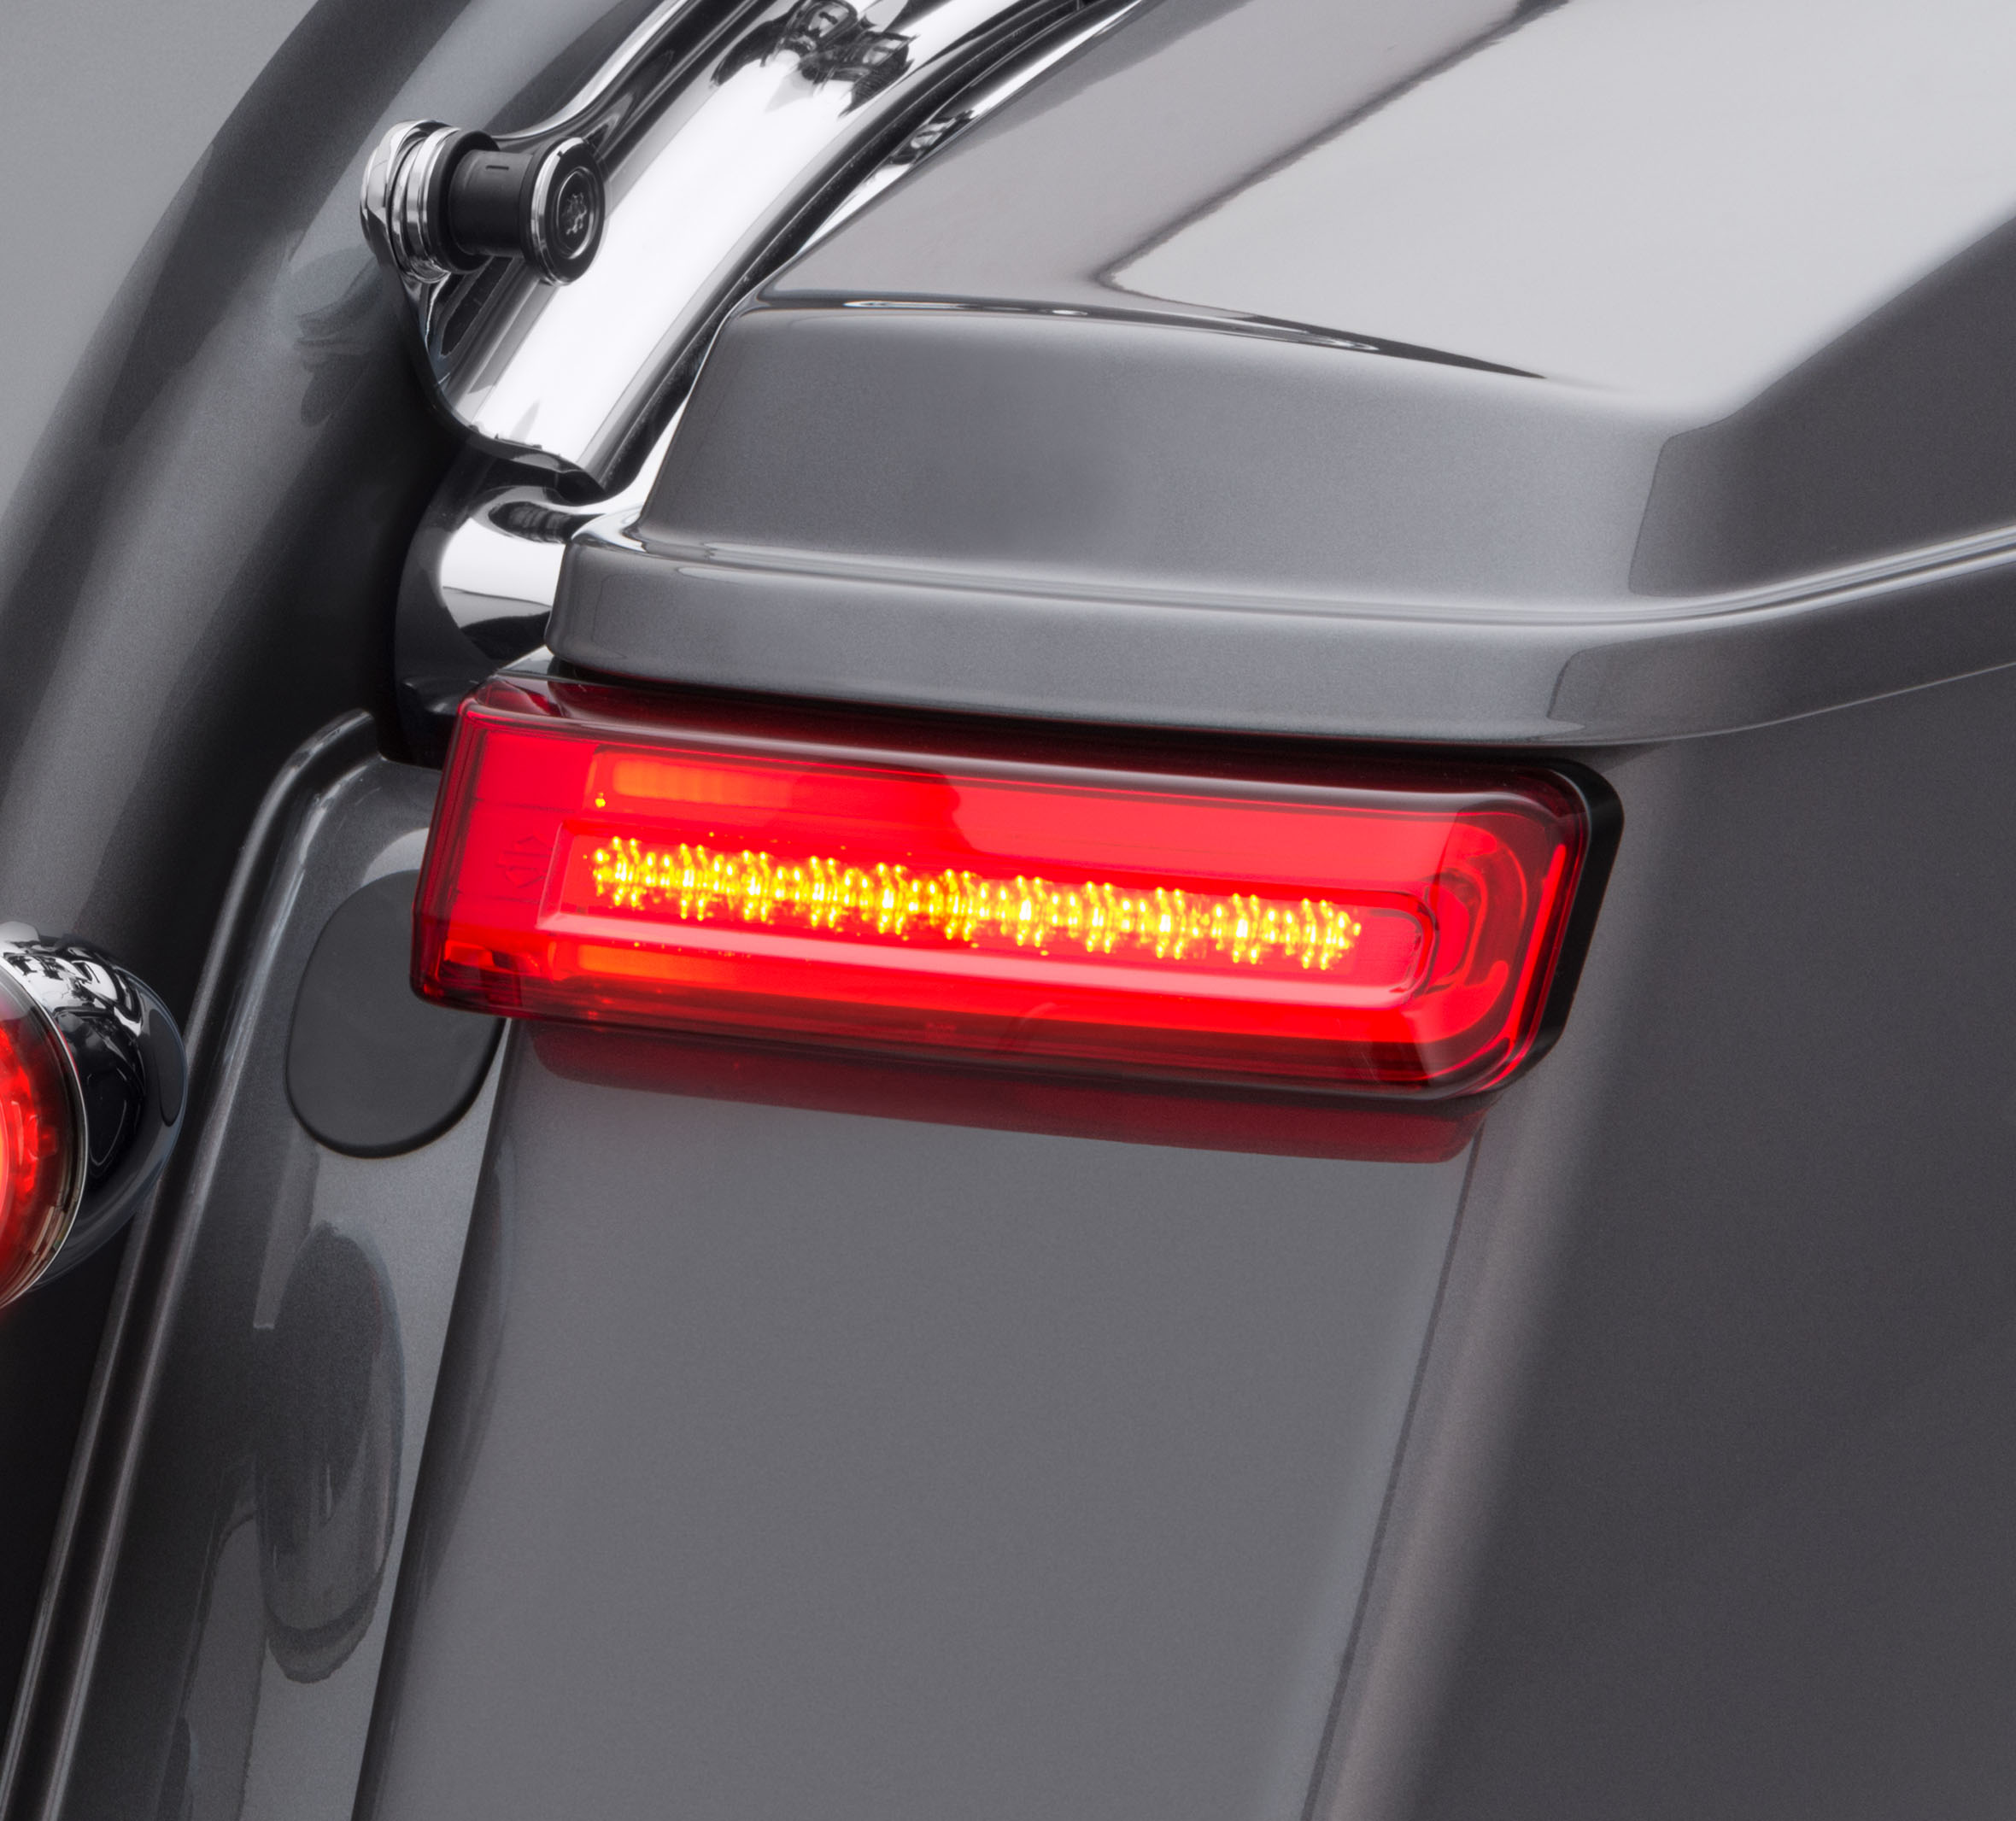 New Smoke Lens LED Tail Brake Light for Harley Touring Street Glide Heritage FL 